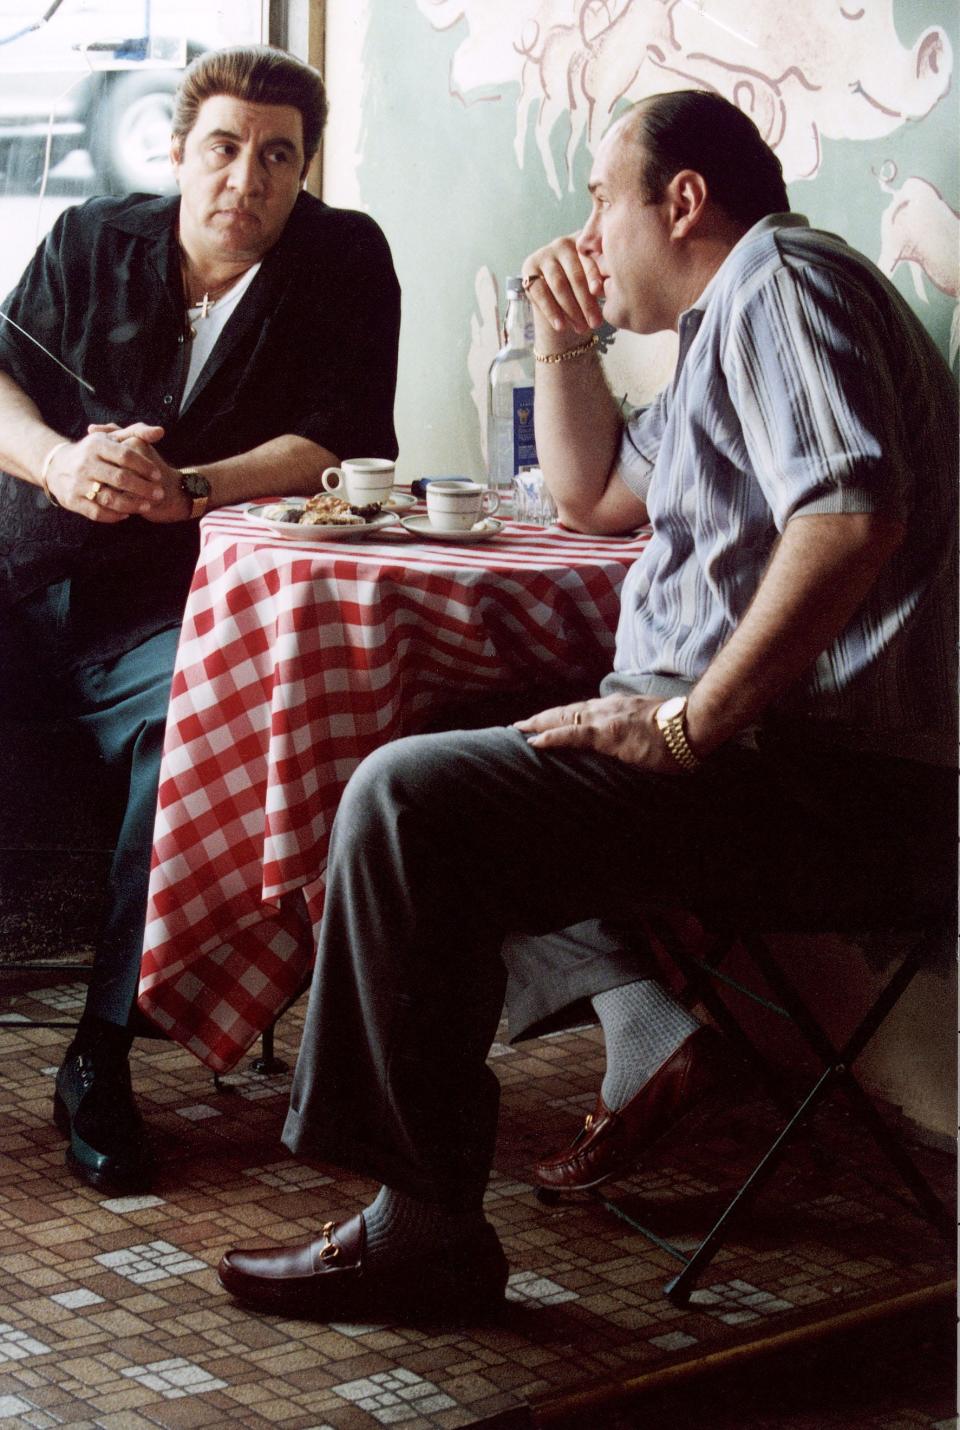 Steven Van Zandt and James Gandolfini in "The Sopranos."